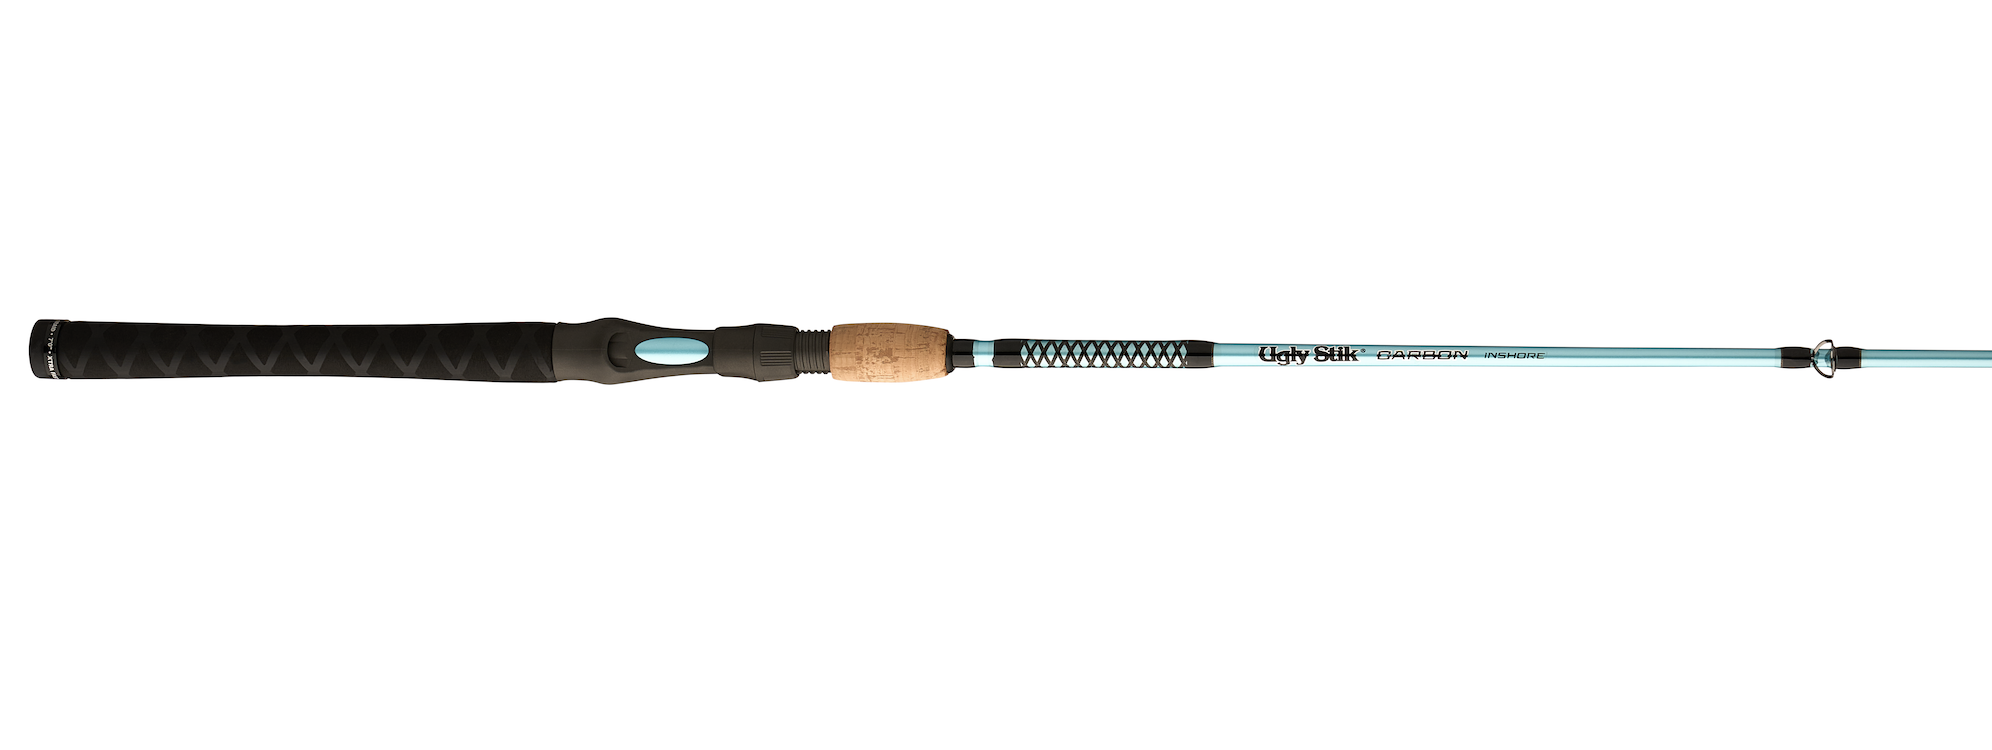 Ugly Stik Inshore Select Casting Rod - Shop Fishing at H-E-B